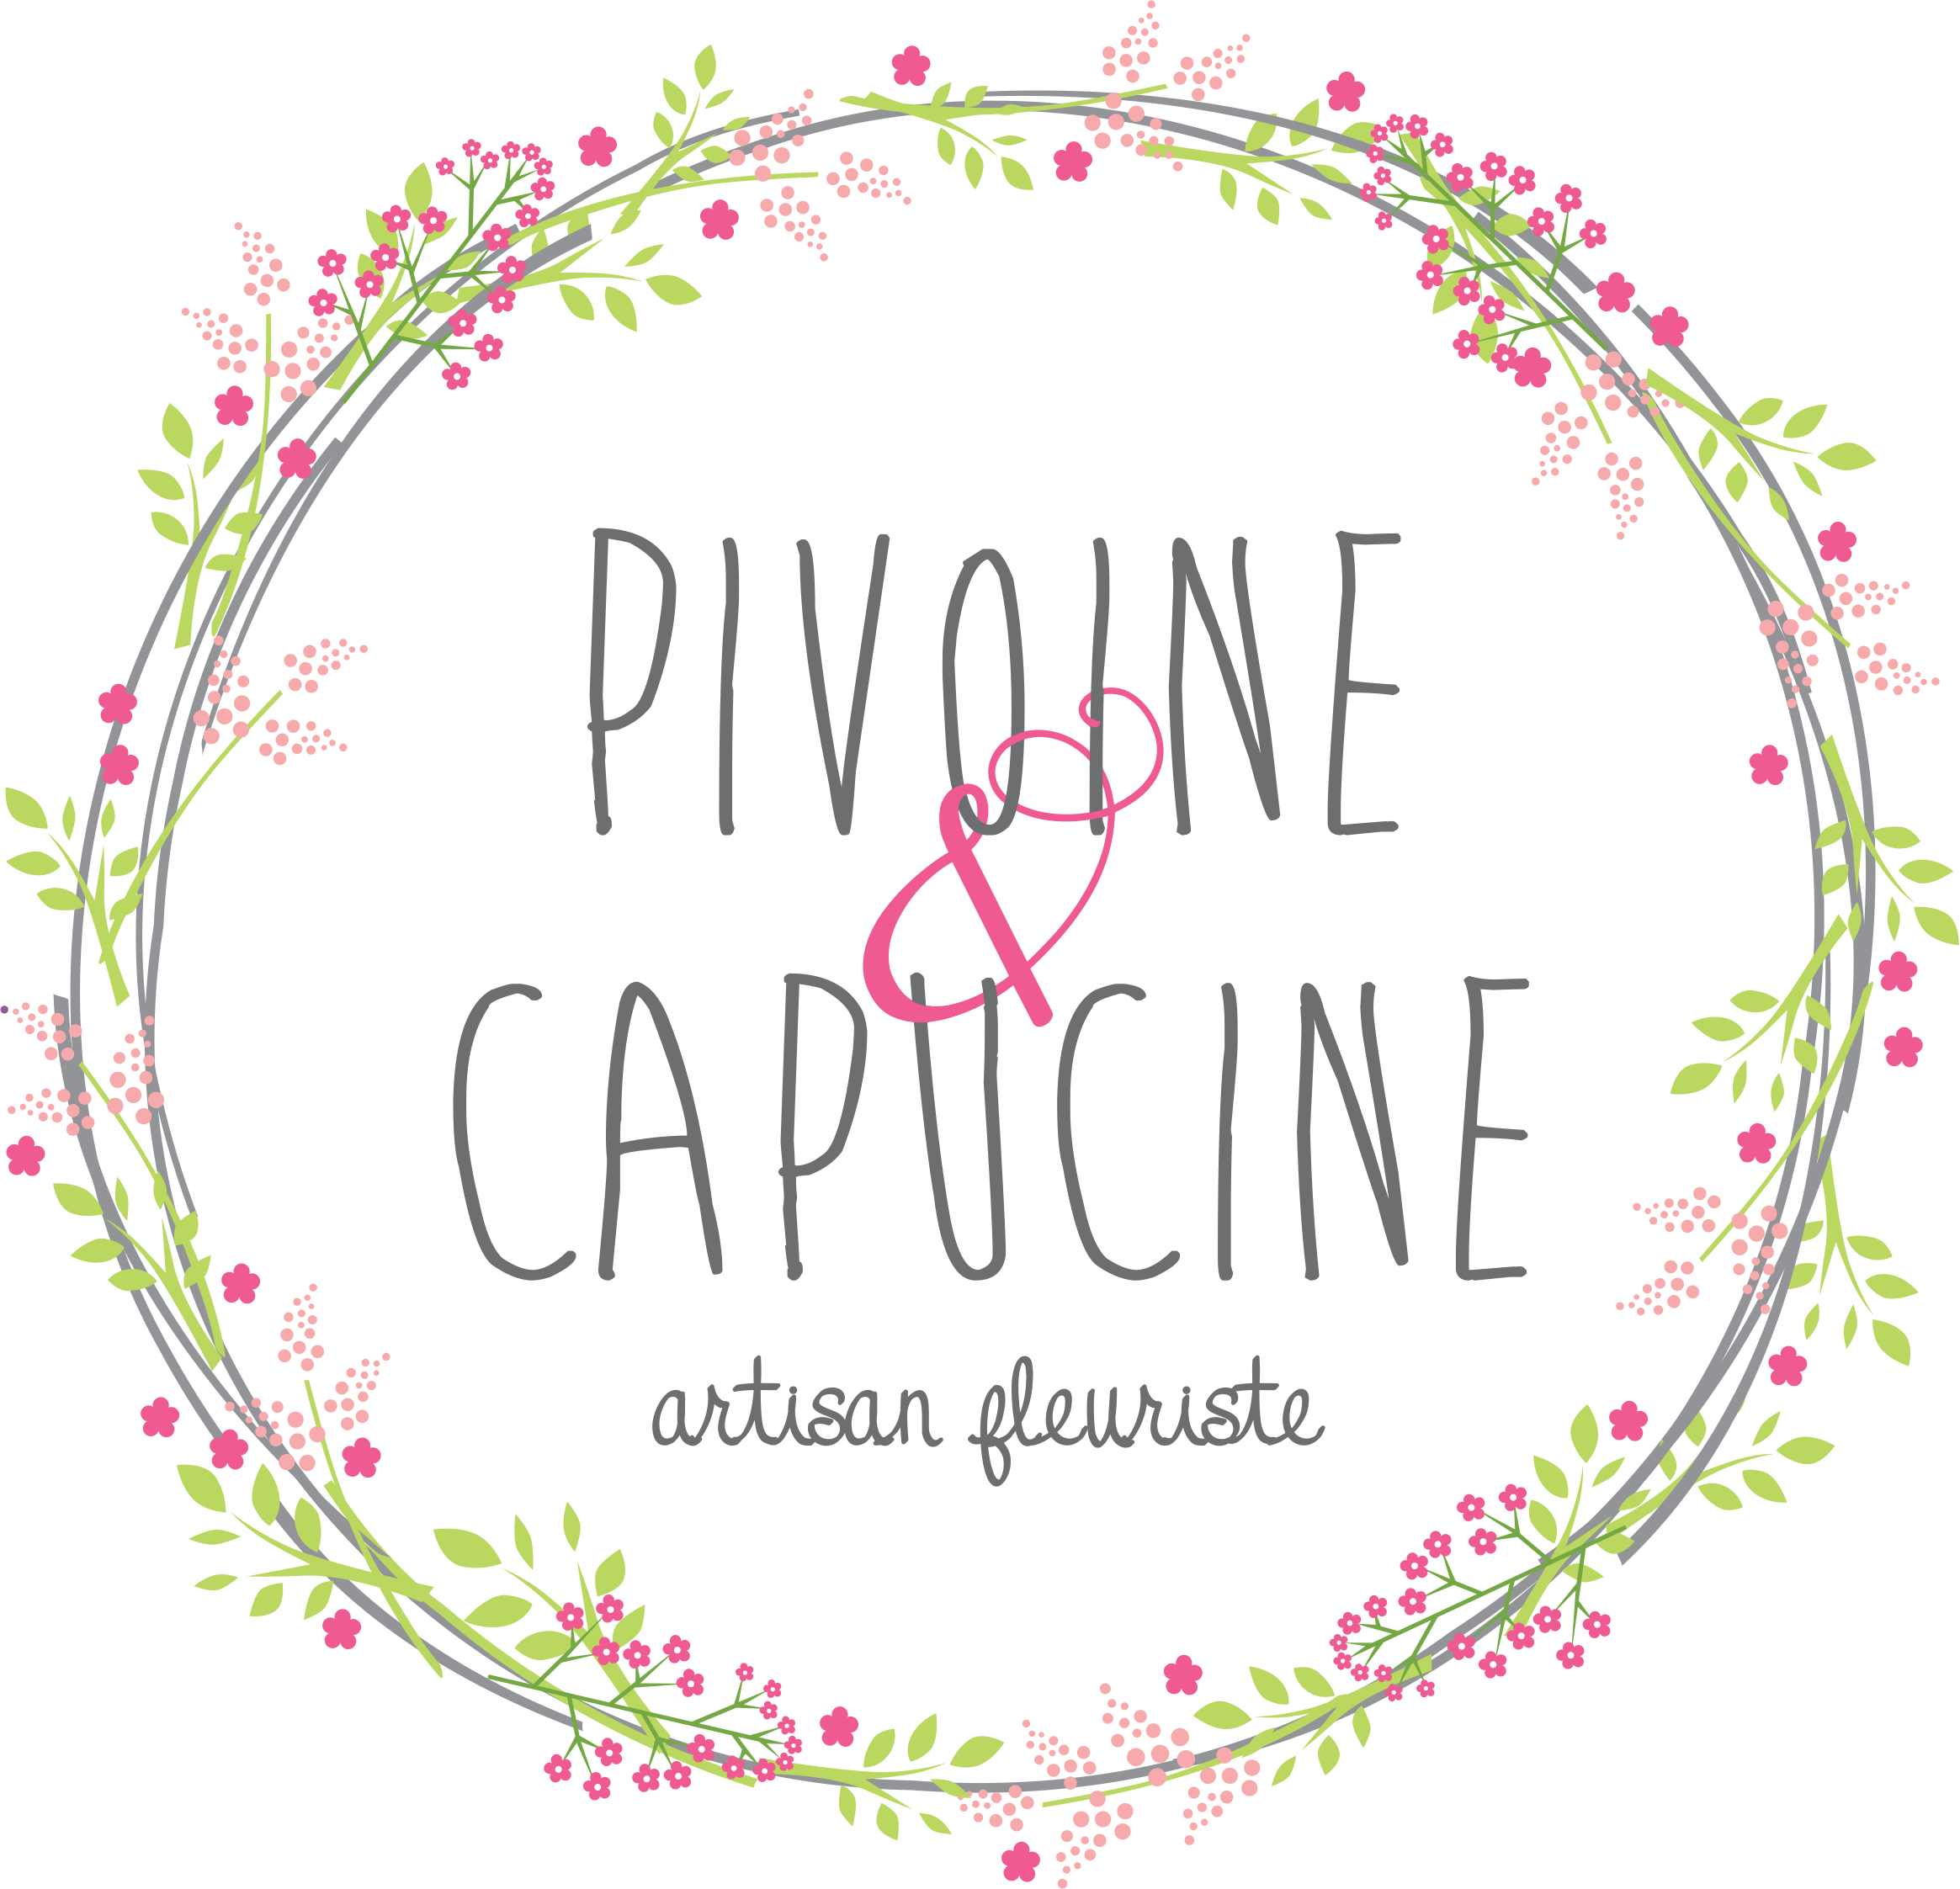 Logo PIVOINE & CAPUCINE